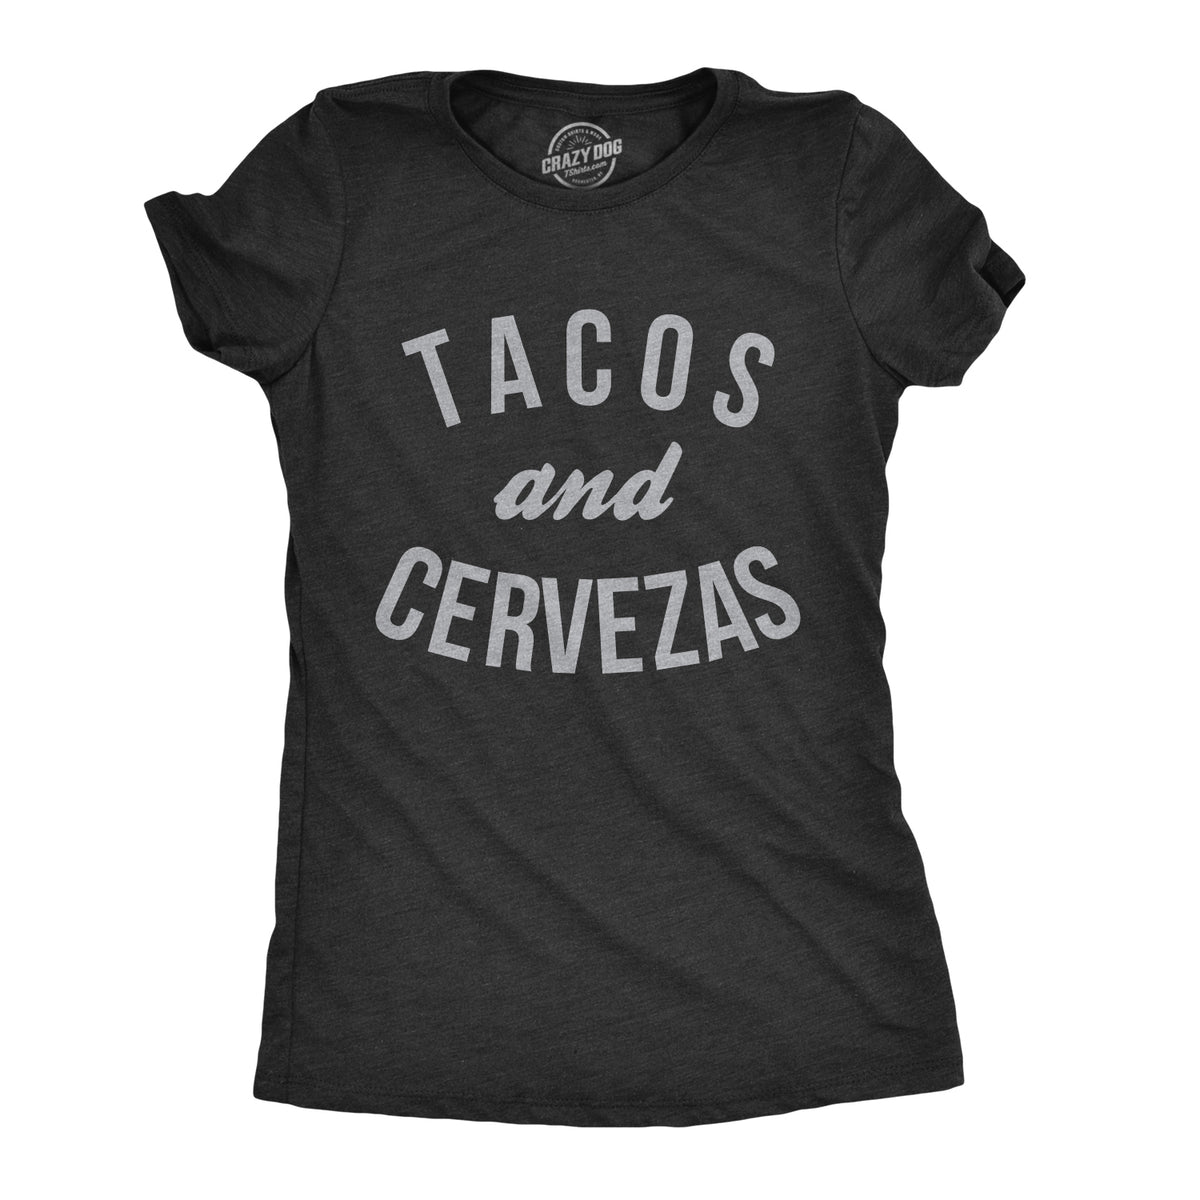 Funny Heather Black - Tacos Cervezas Tacos And Cervezas Womens T Shirt Nerdy Cinco De Mayo beer Tee